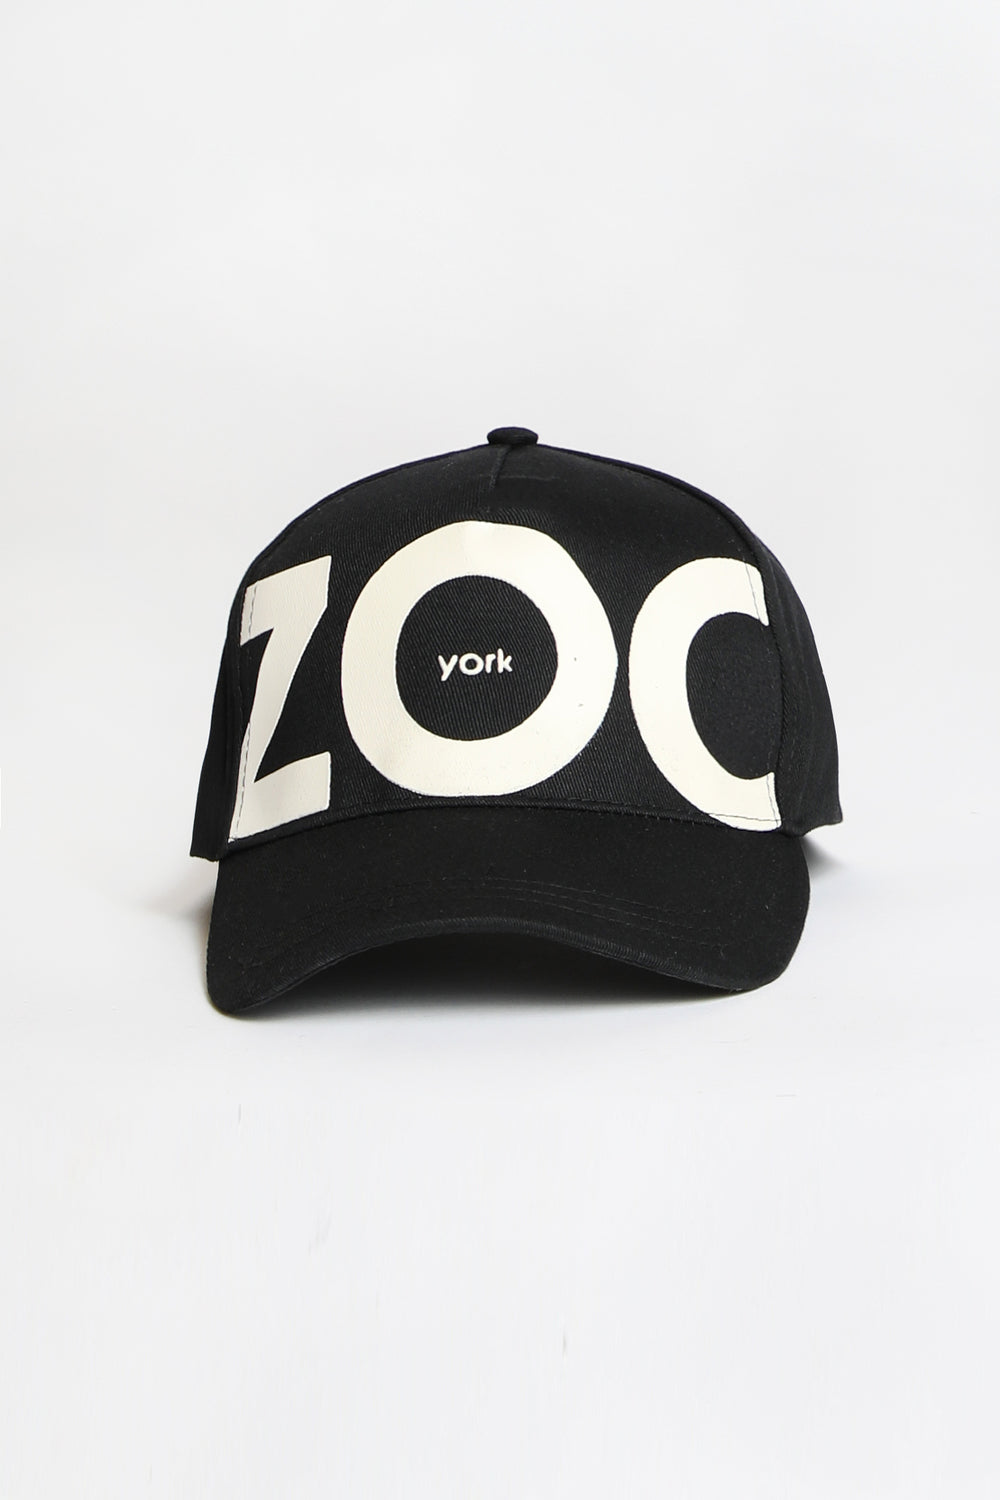 Zoo York Unisex Large Text Baseball Hat Black